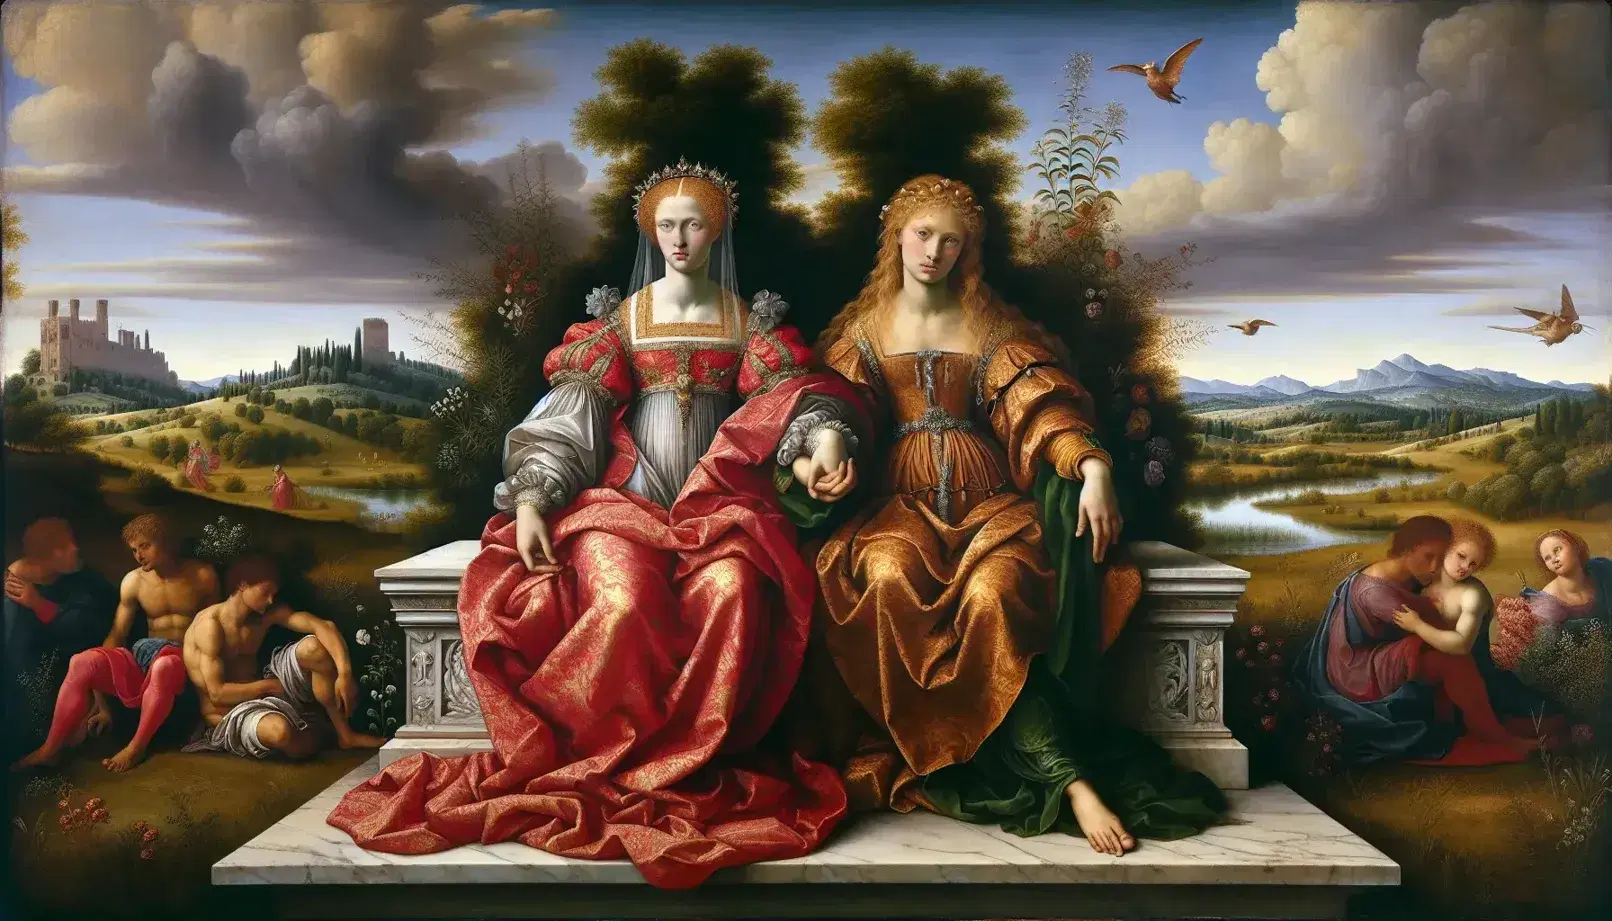 Dipinto Rinascimentale 'Amore Sacro e Amore Profano' di Tiziano con due donne, una vestita e una nuda, su un sarcofago, sfondo di paesaggio e giardino.